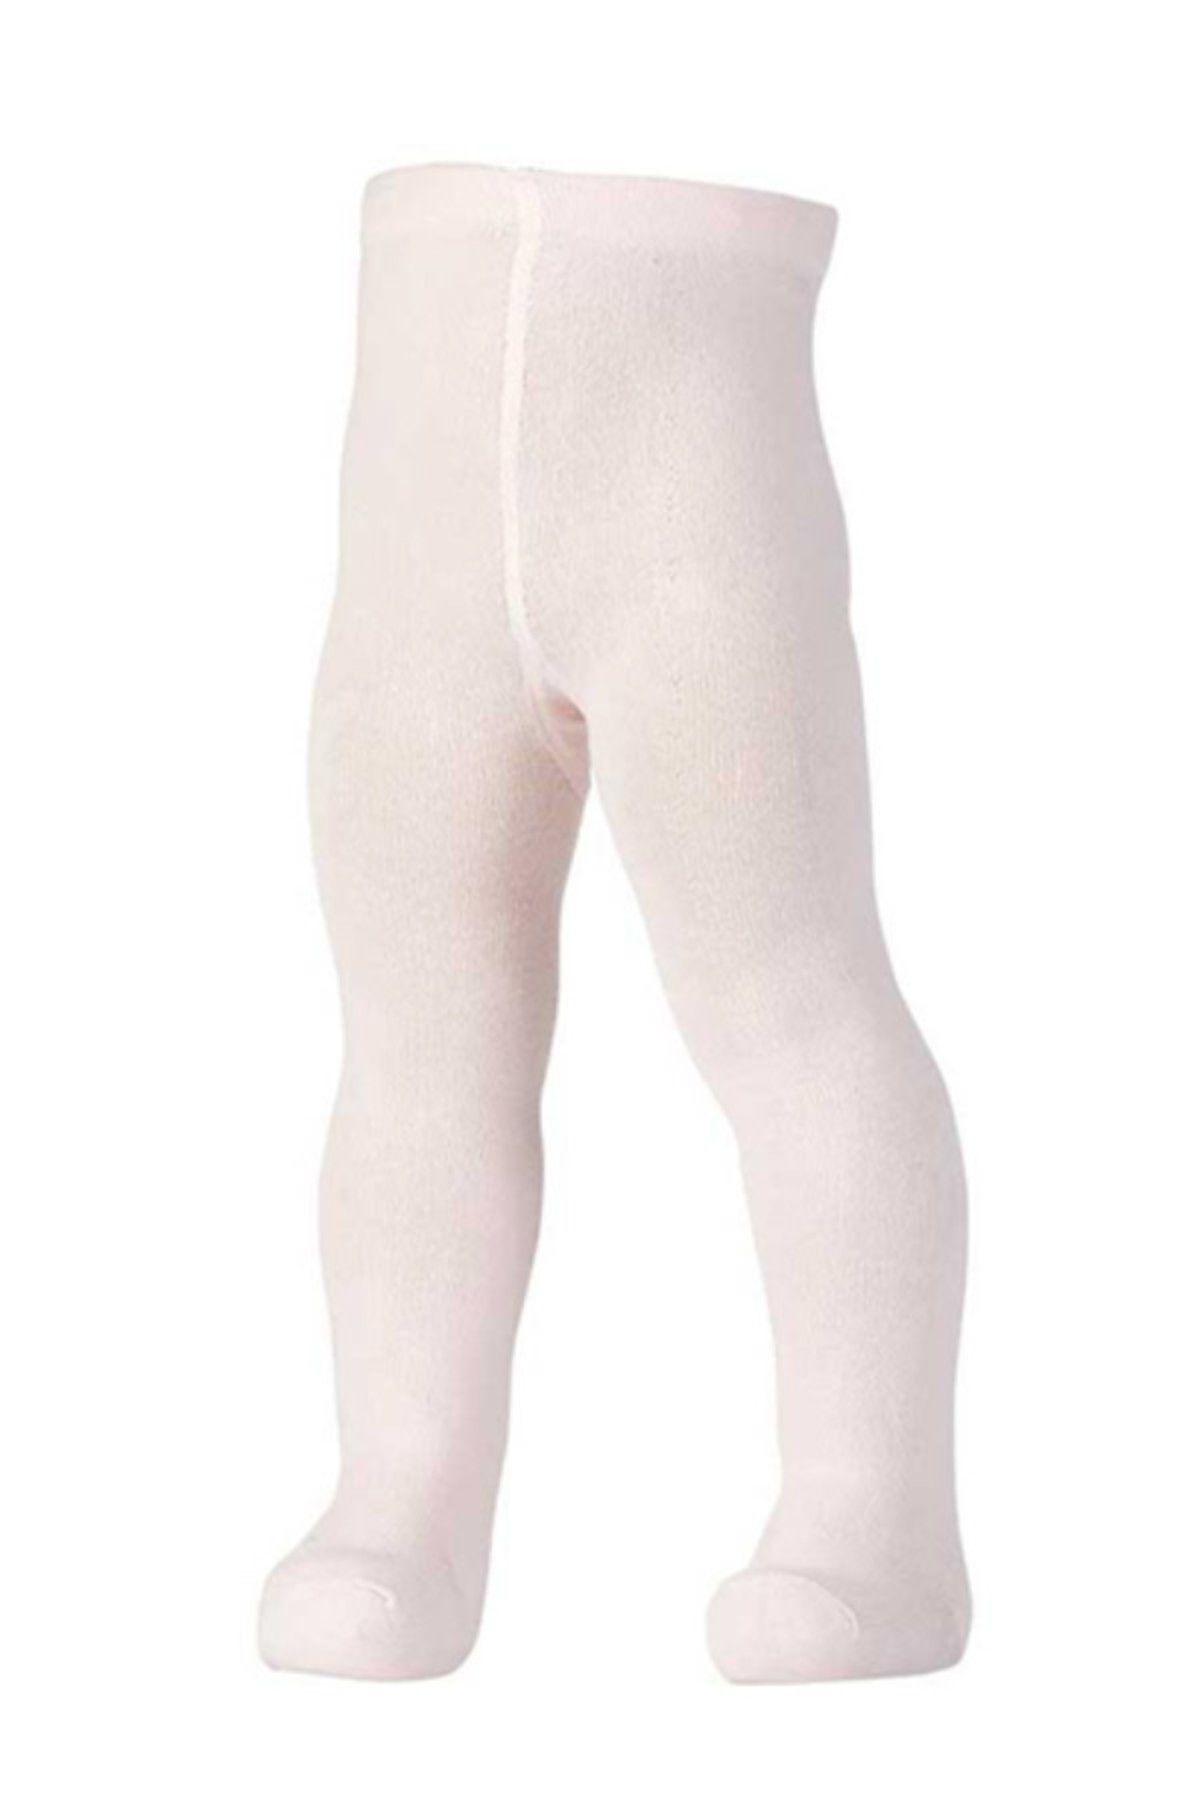 Genel Markalar Kız Çocuk Pembe Düz Külotlu Çorap 0 Ay